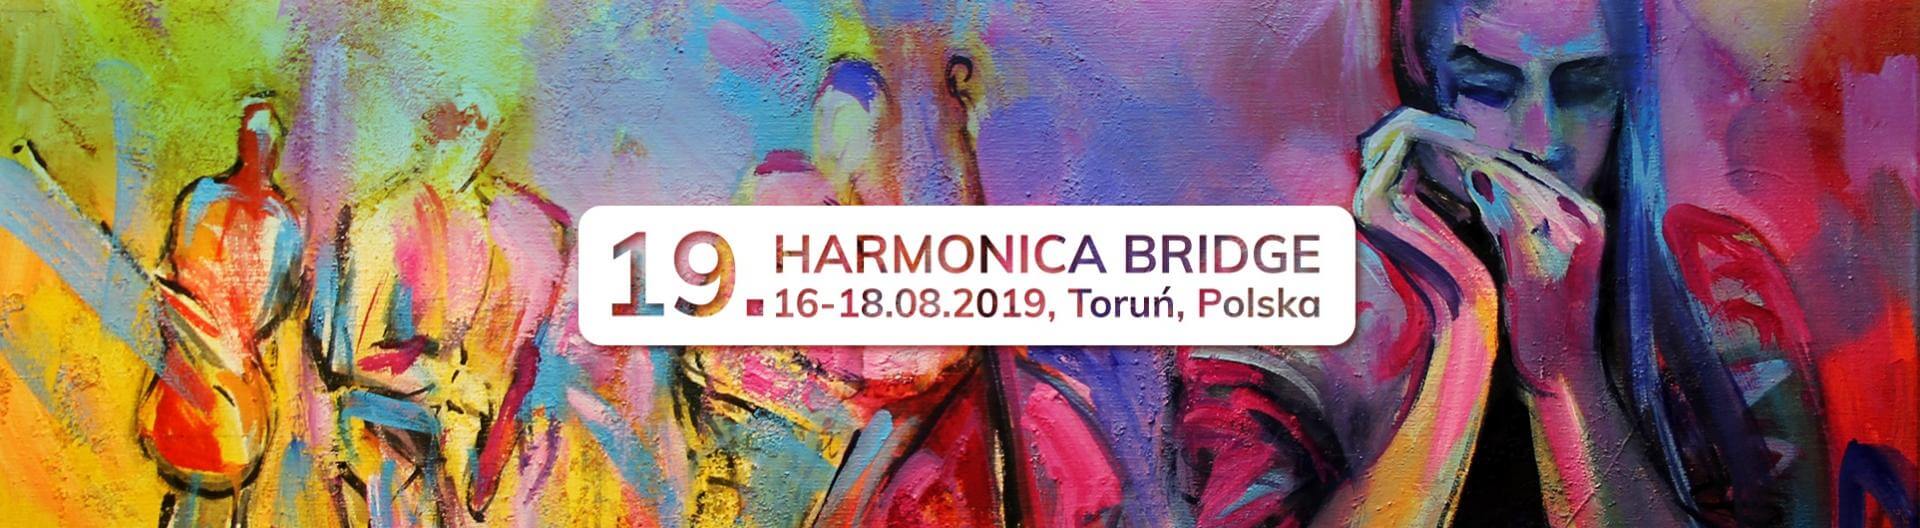 Harmonica Bridge 2019